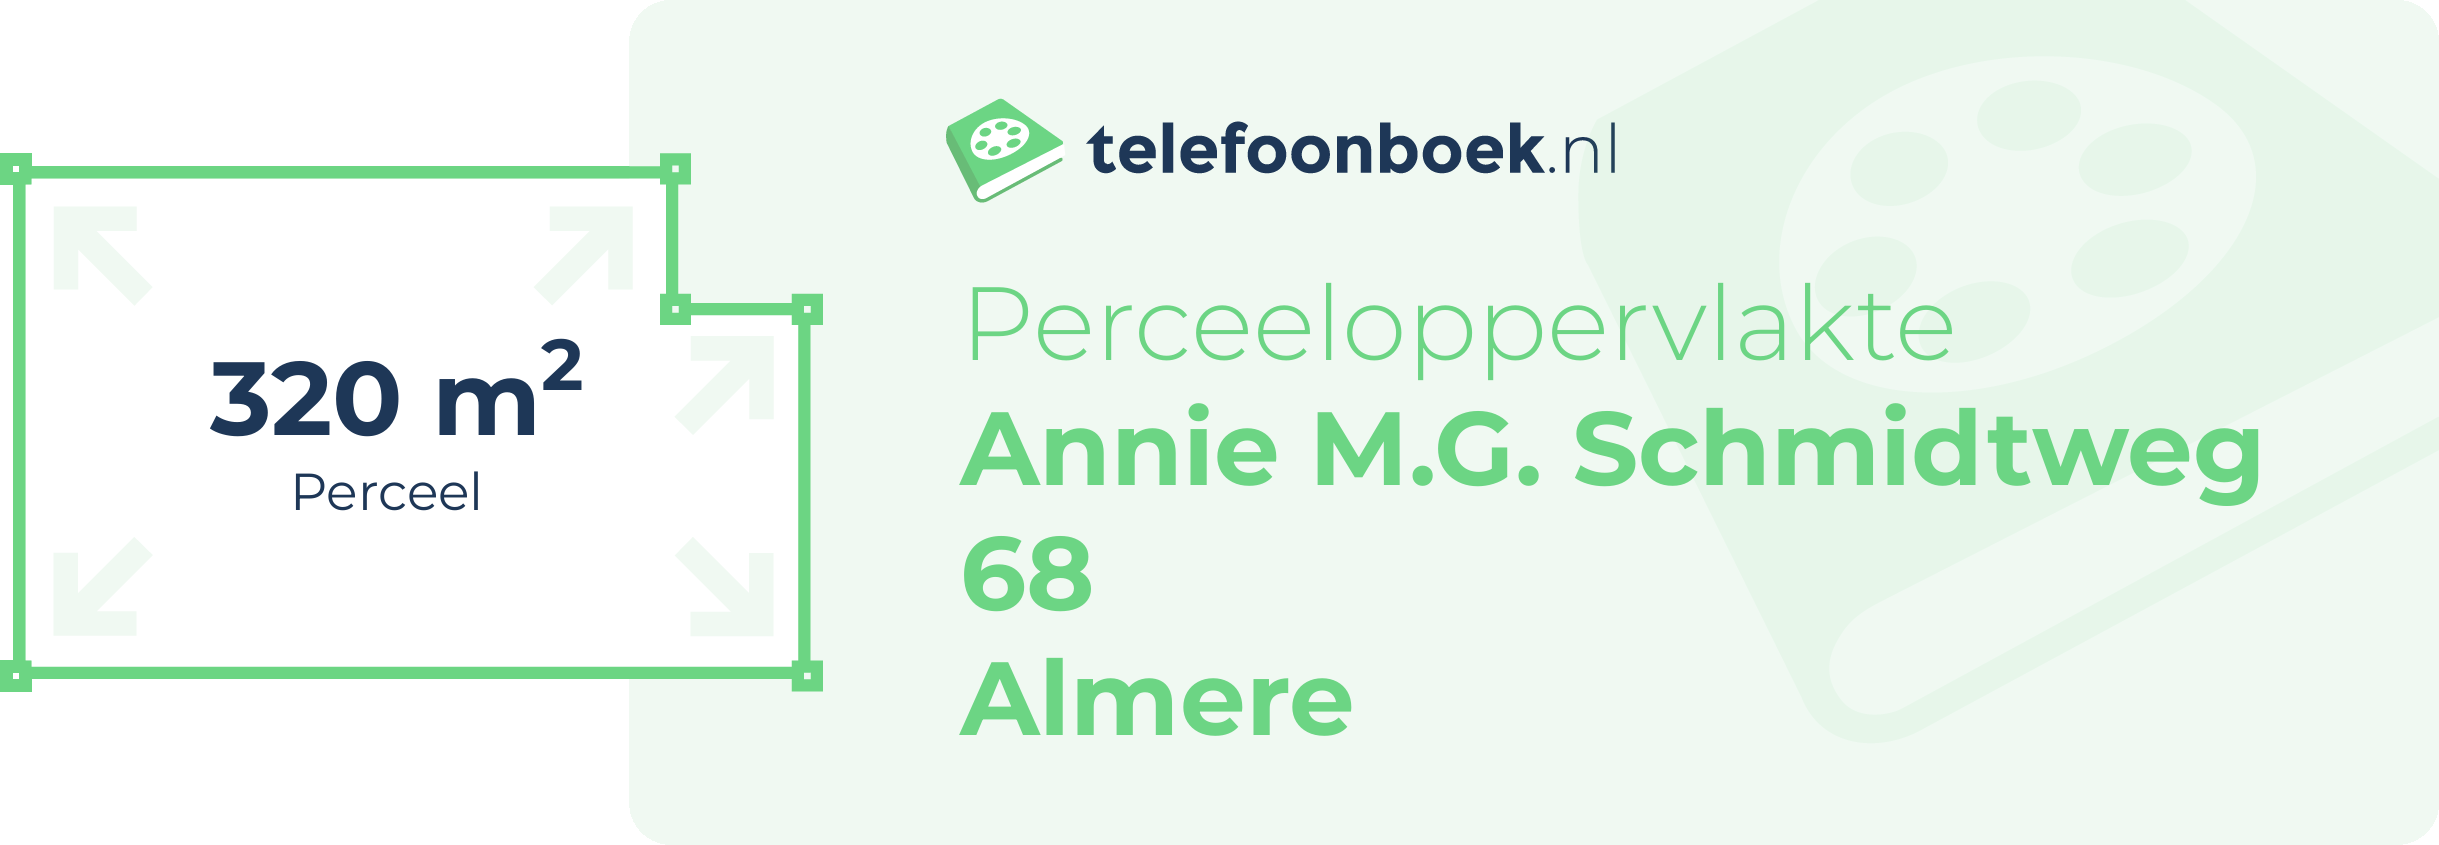 Perceeloppervlakte Annie M.G. Schmidtweg 68 Almere